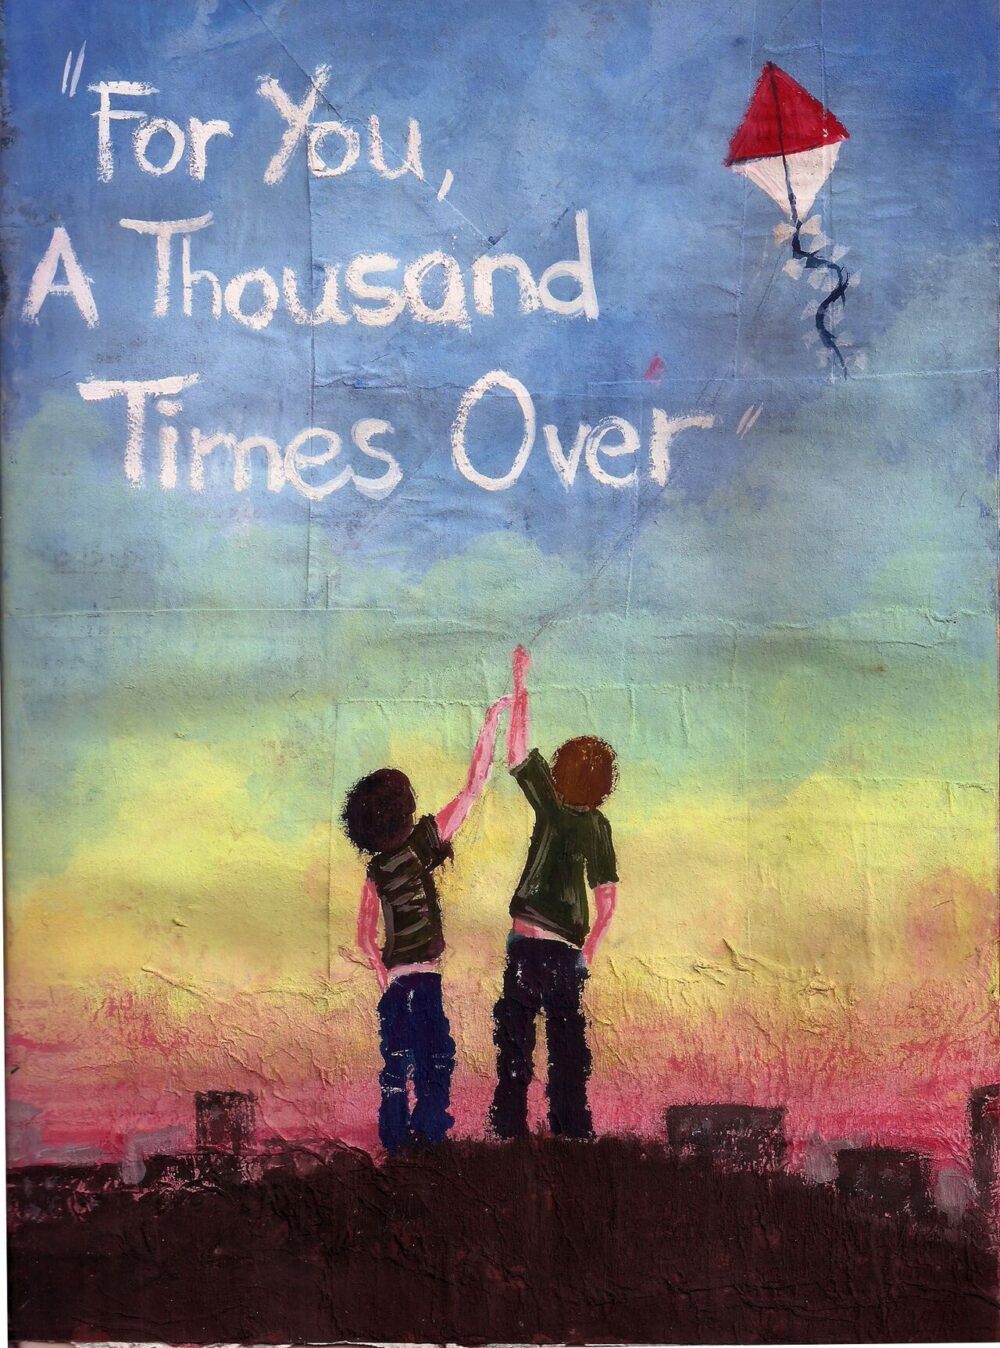 "For you, a thousand times over" là câu thoại đầy ám ảnh trong tiểu thuyết Người đua diều